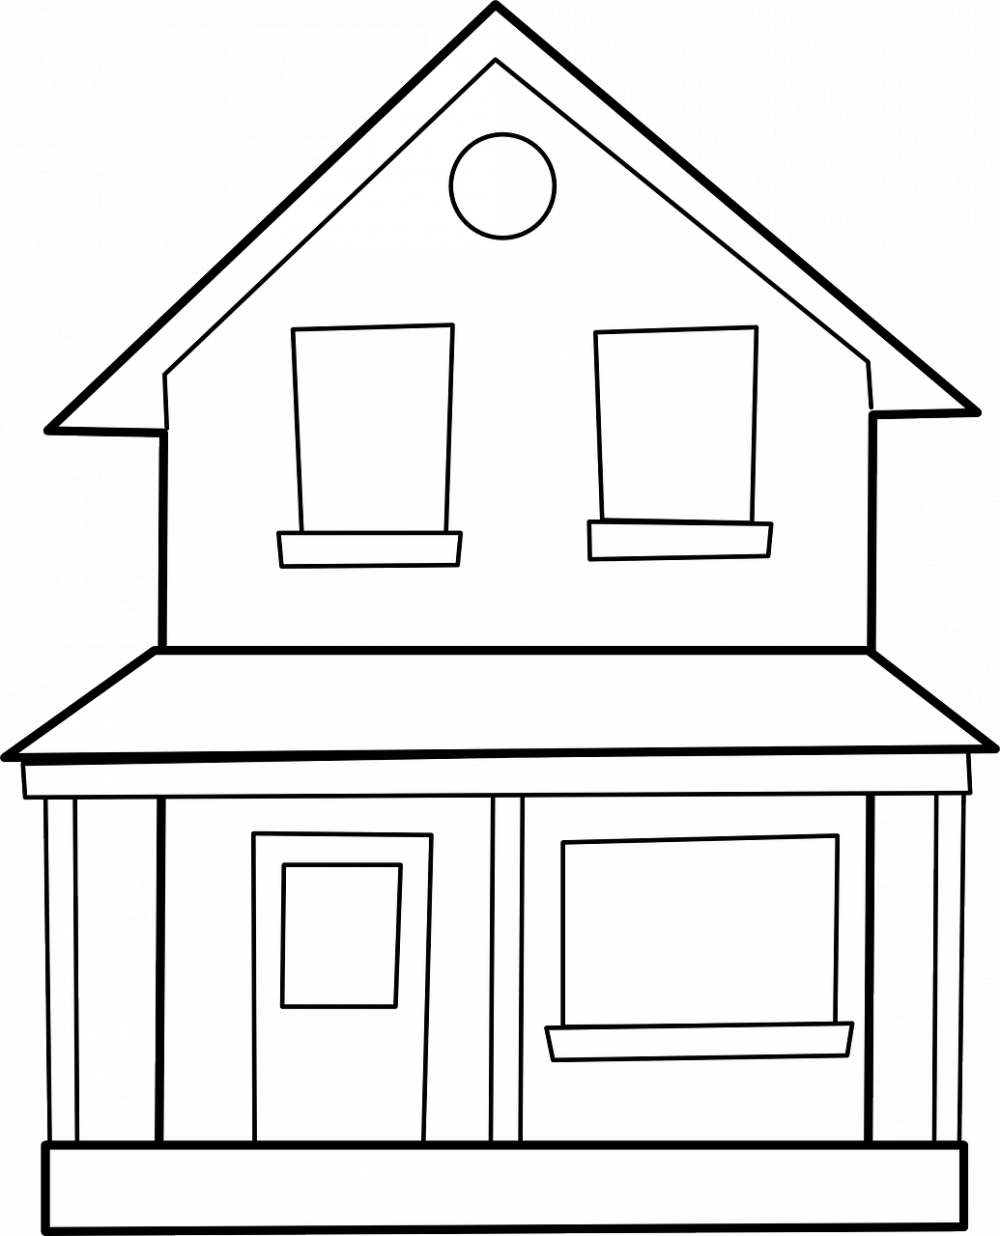 Pris for å bygge et hus: En omfattende guide